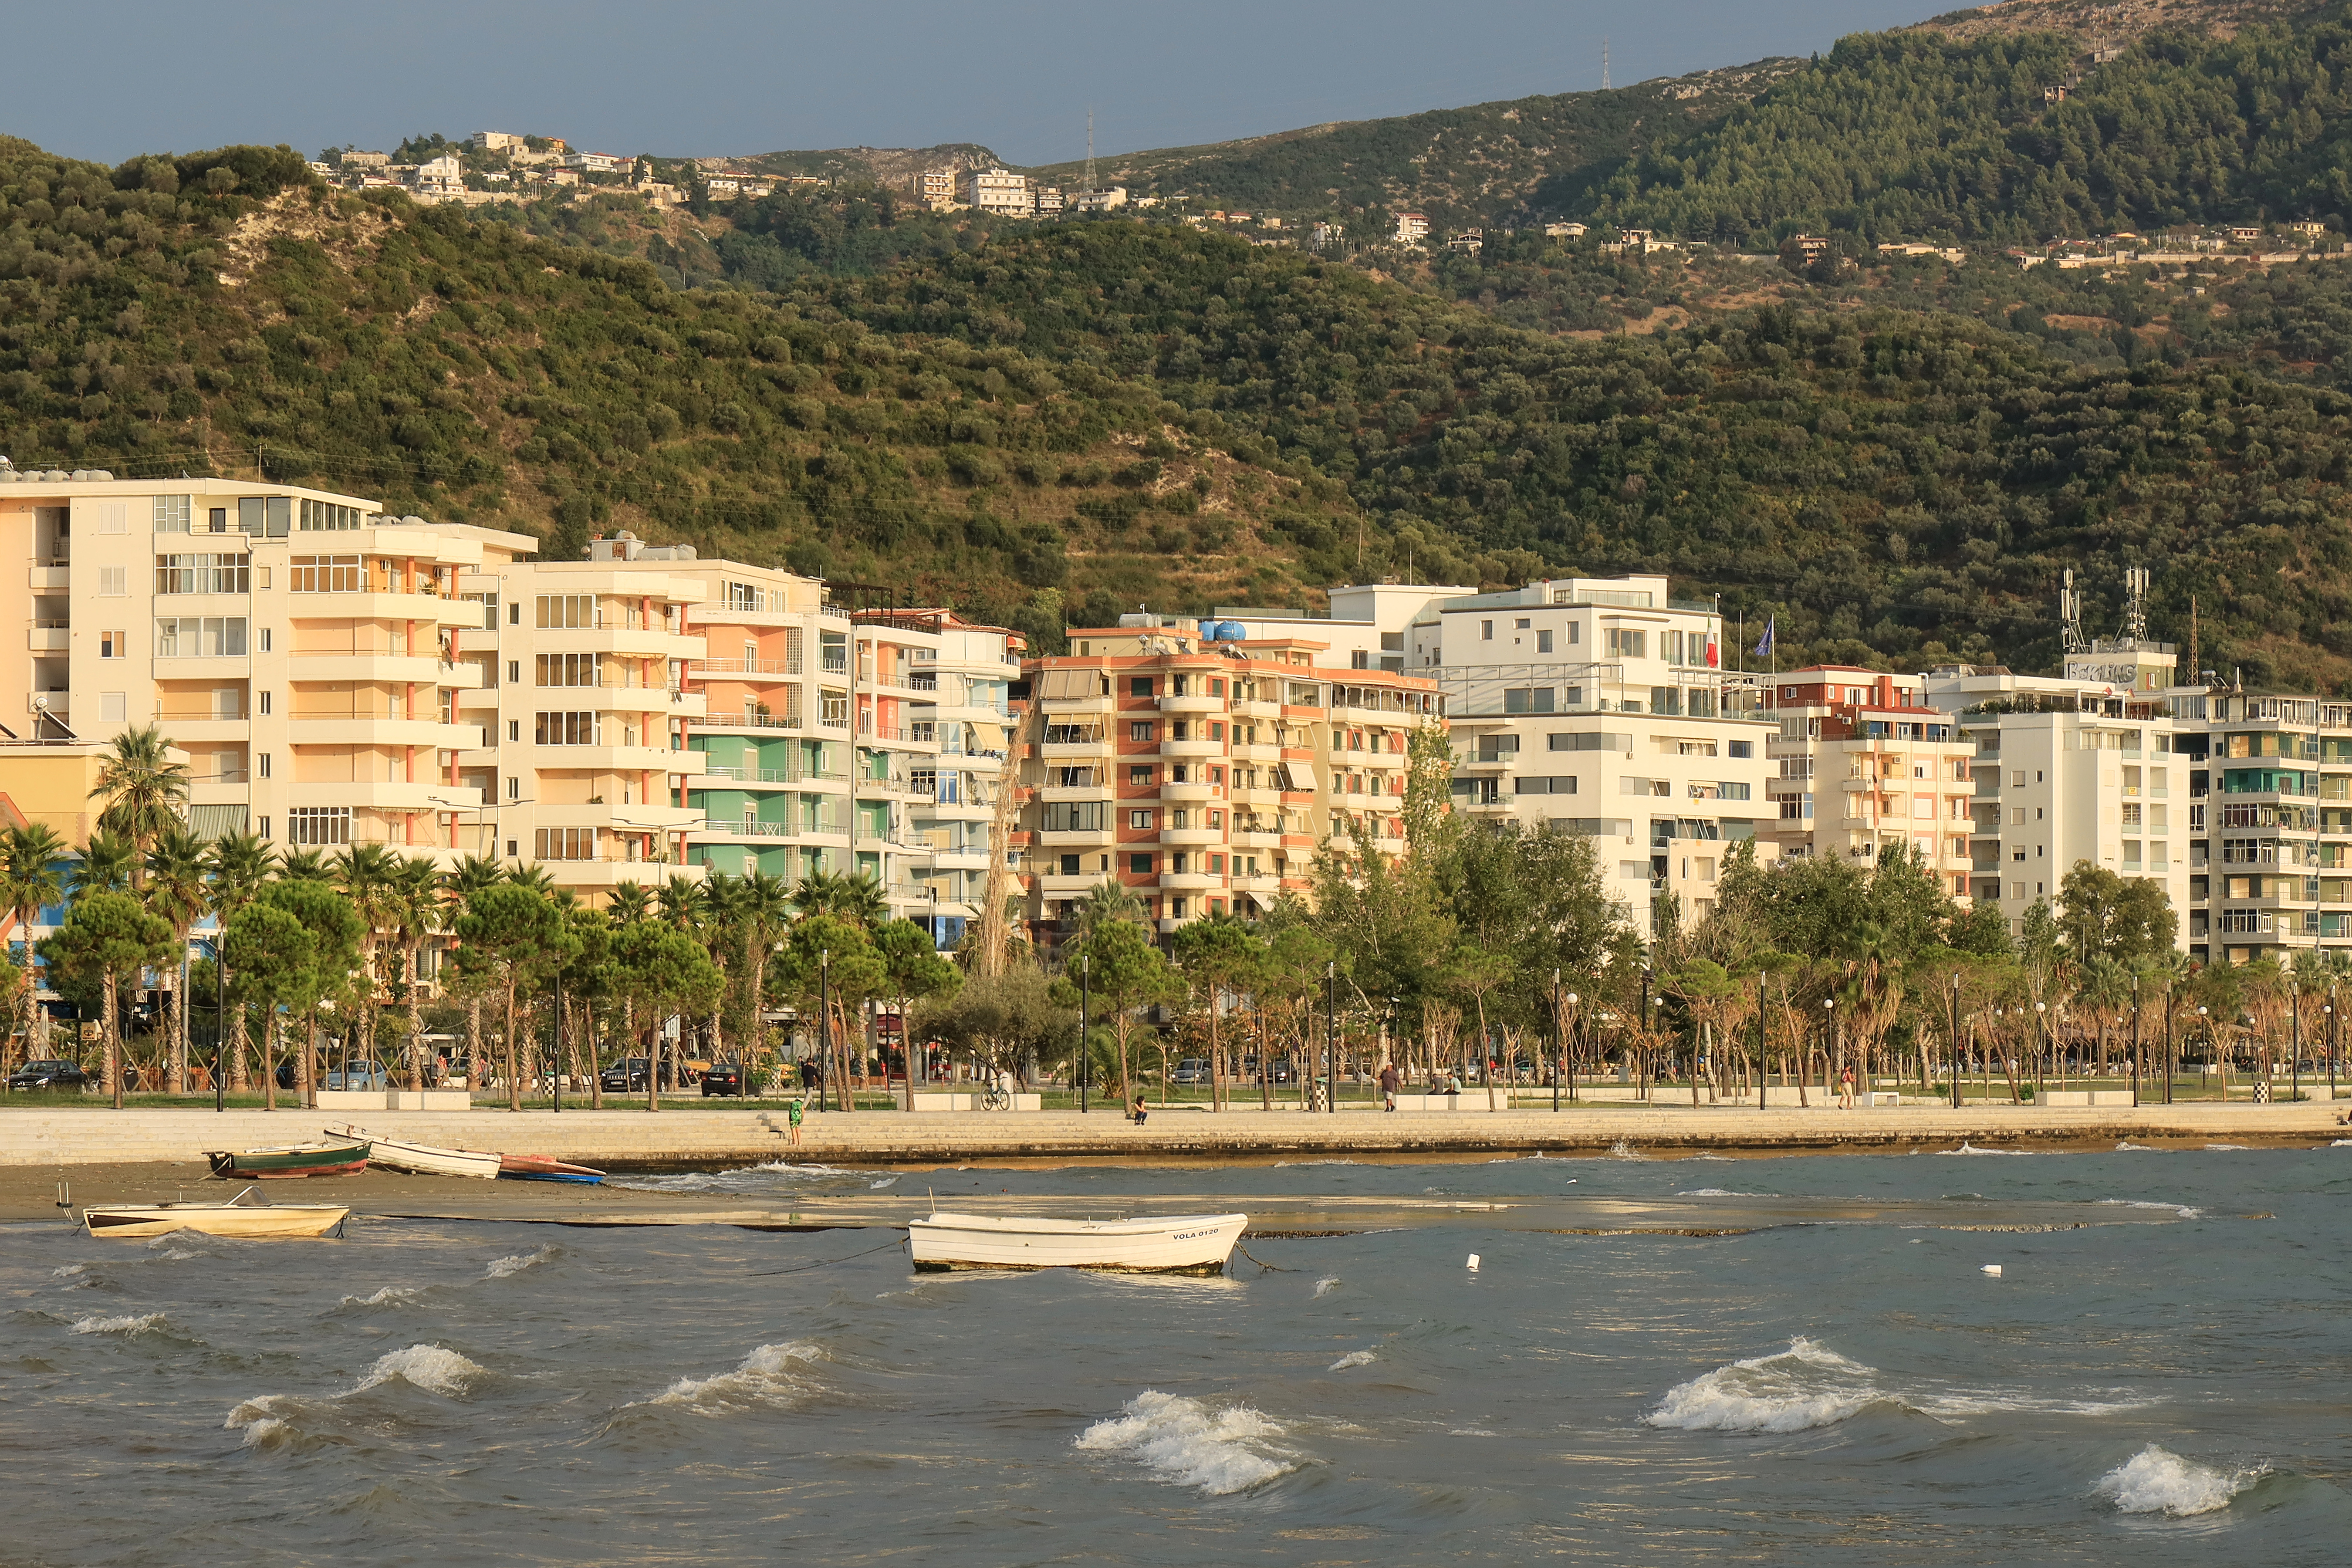 Adriatic Sea - Wikipedia